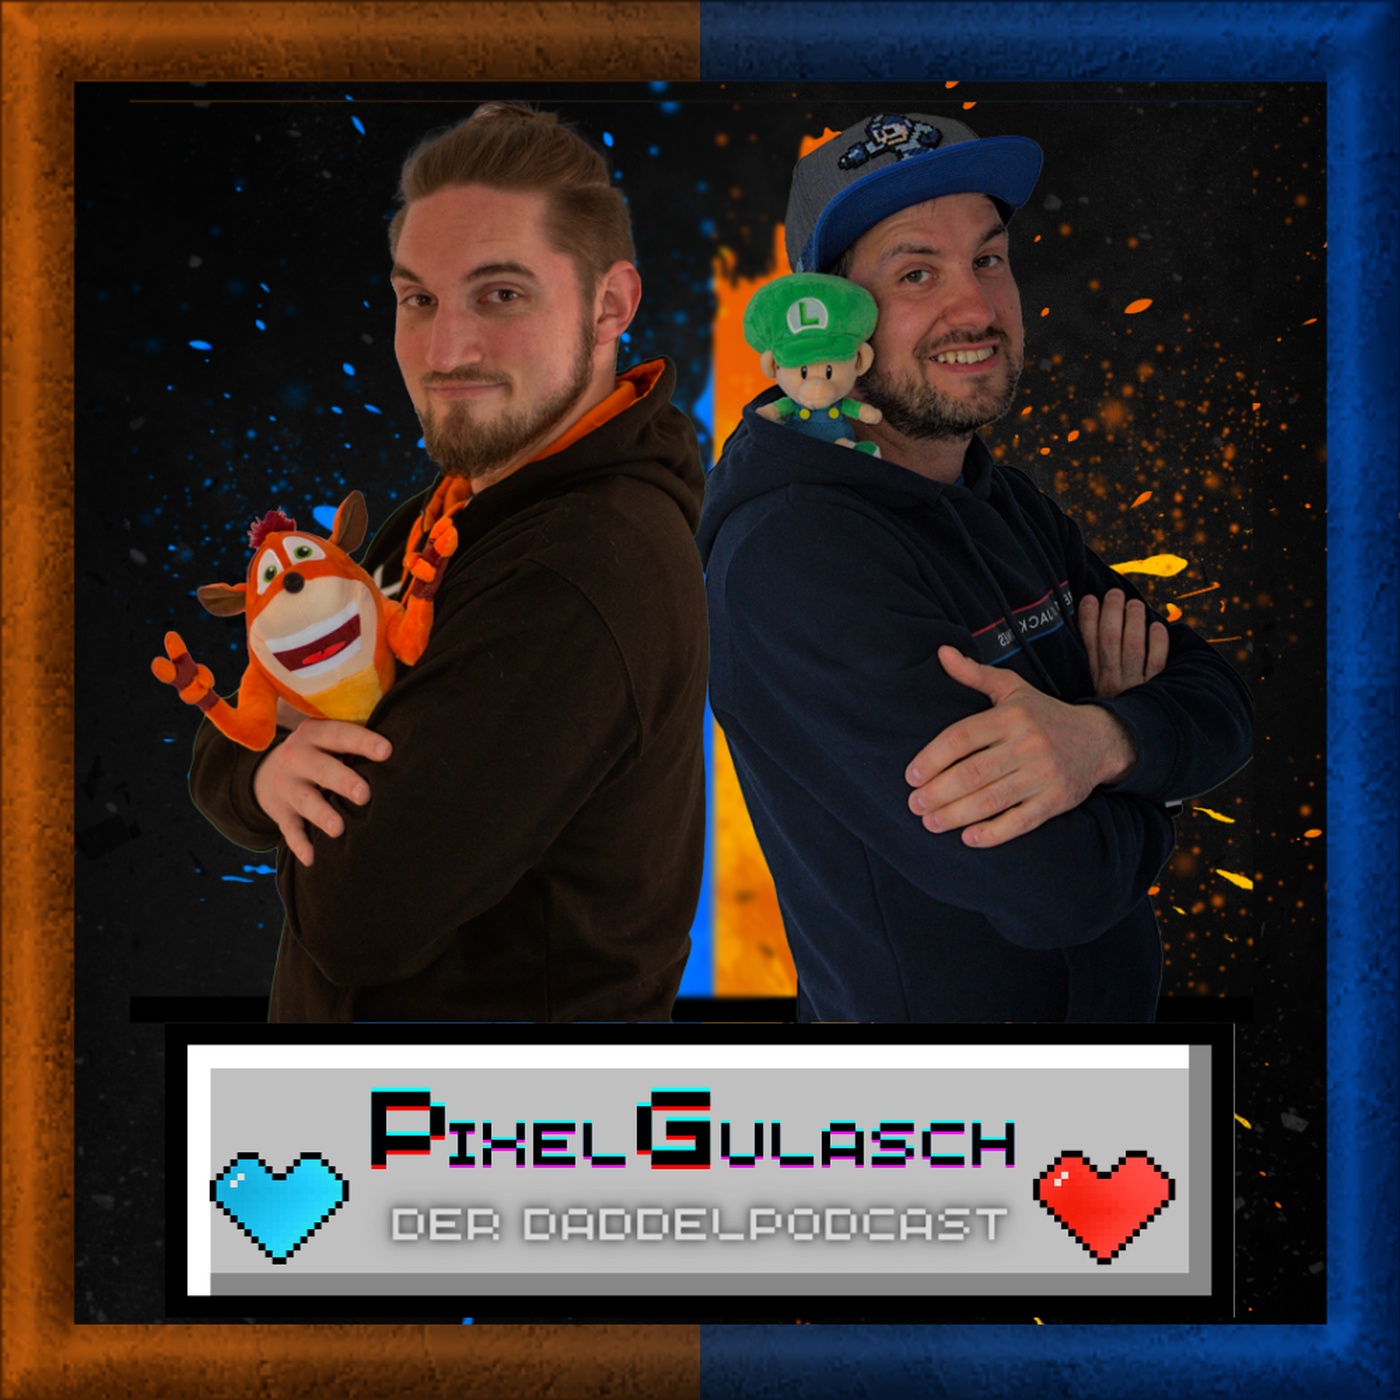 Pixel Gulasch -  Der DaddelPodcast